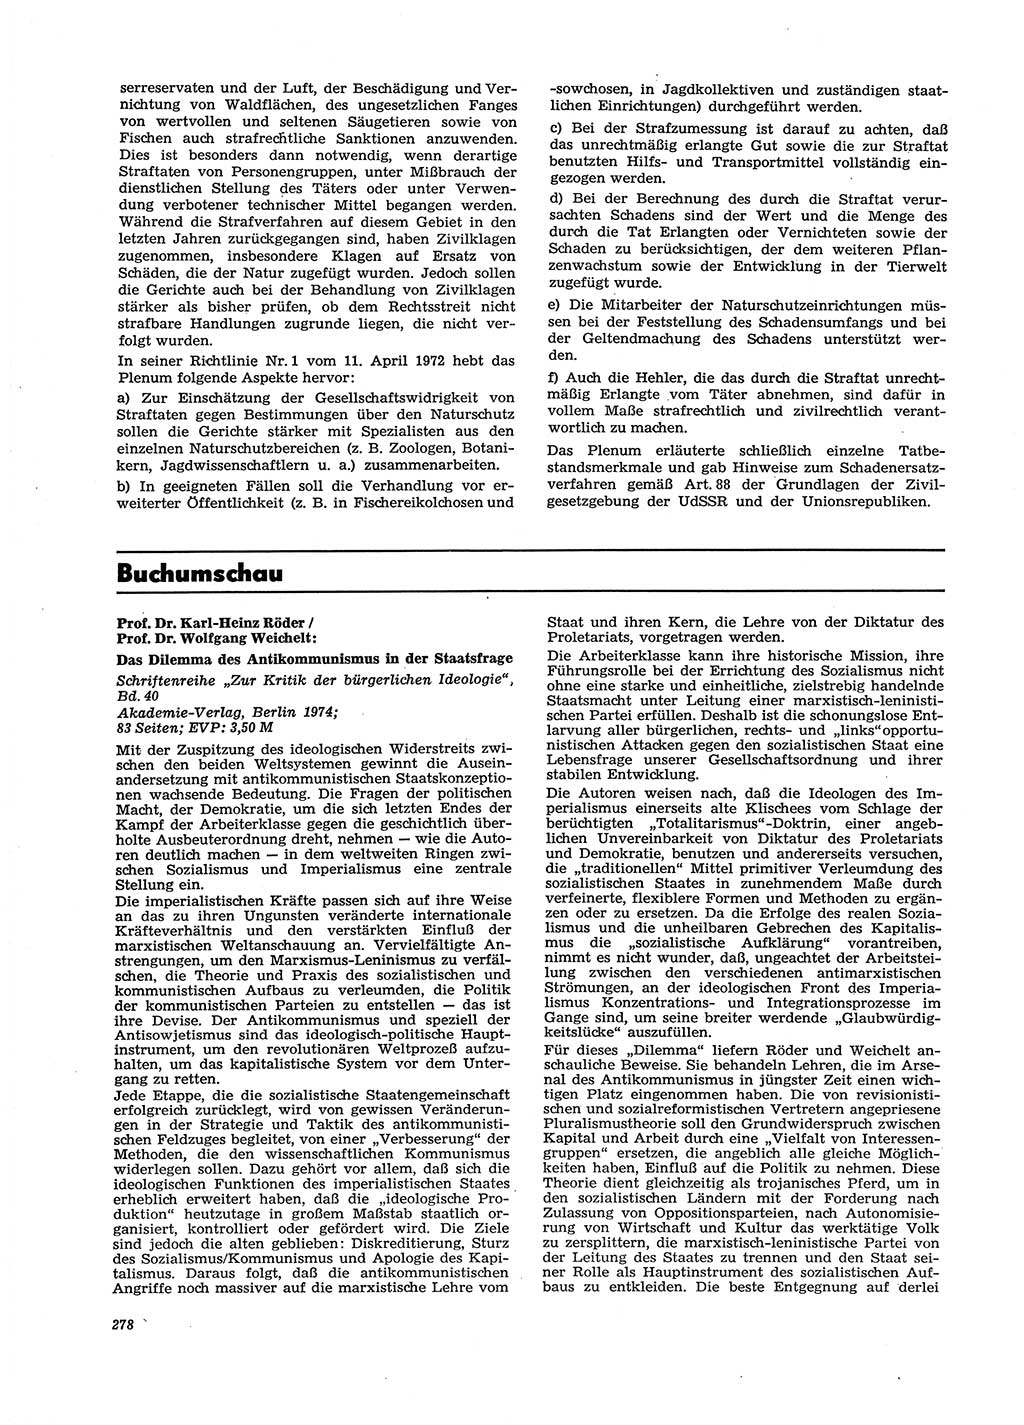 Neue Justiz (NJ), Zeitschrift für Recht und Rechtswissenschaft [Deutsche Demokratische Republik (DDR)], 29. Jahrgang 1975, Seite 278 (NJ DDR 1975, S. 278)